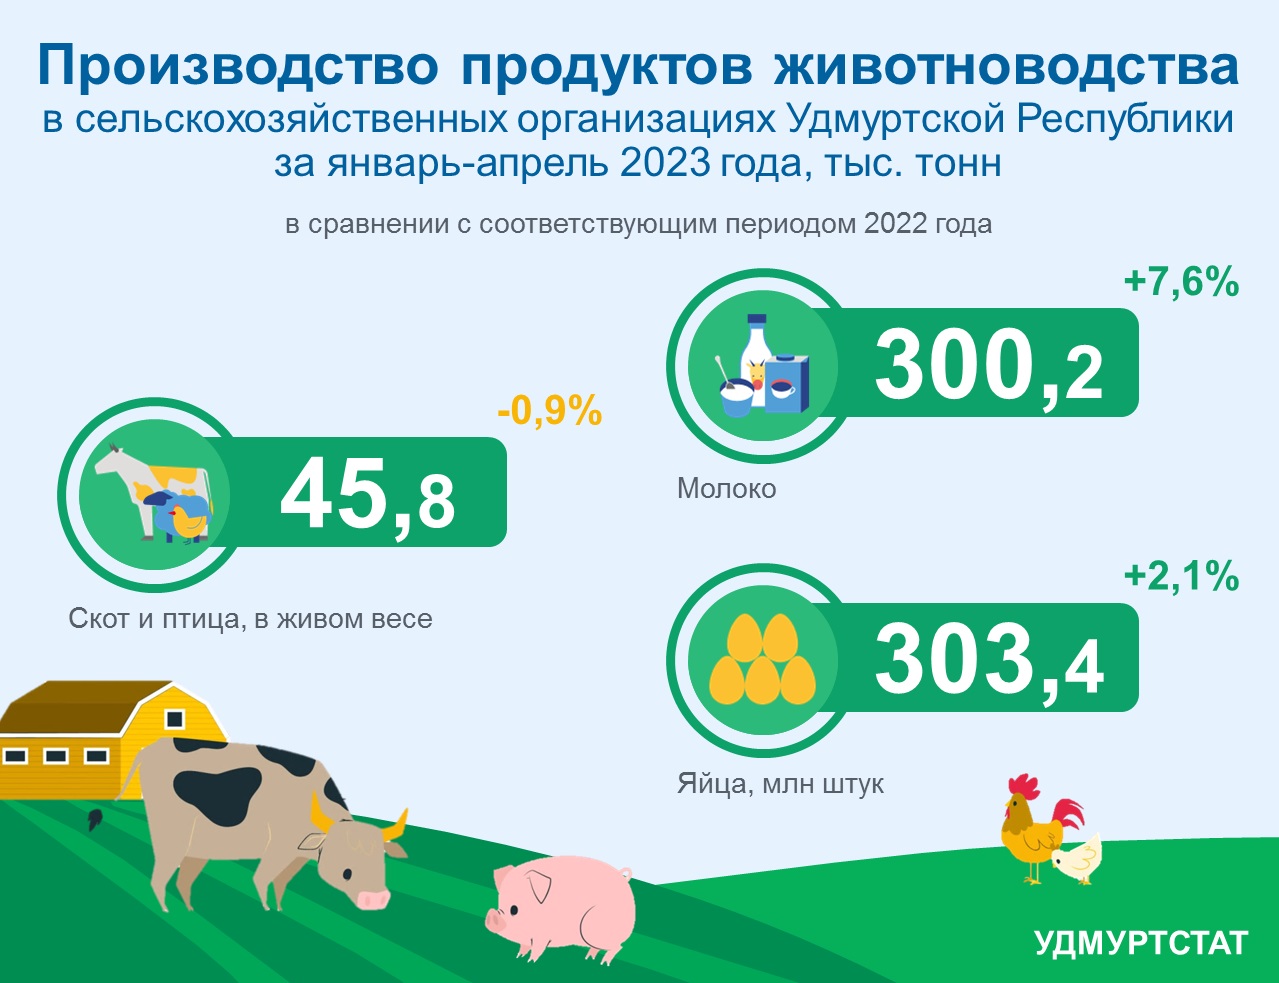 Производство продуктов животноводства в сельскохозяйственных организациях УР за январь-апрель 2023 года.